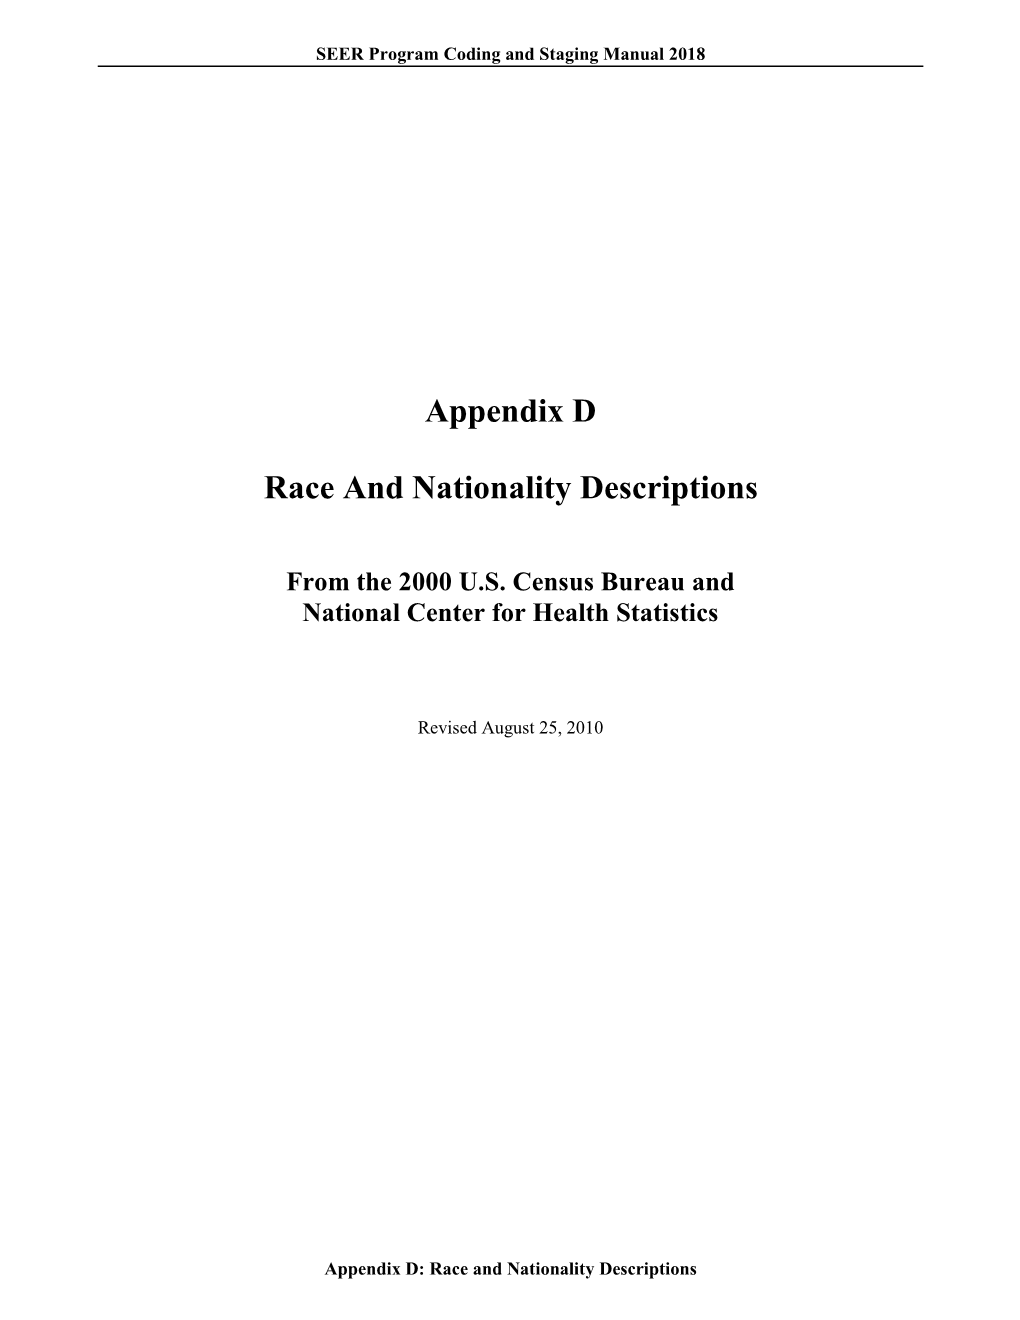 Appendix D Race and Nationality Descriptions